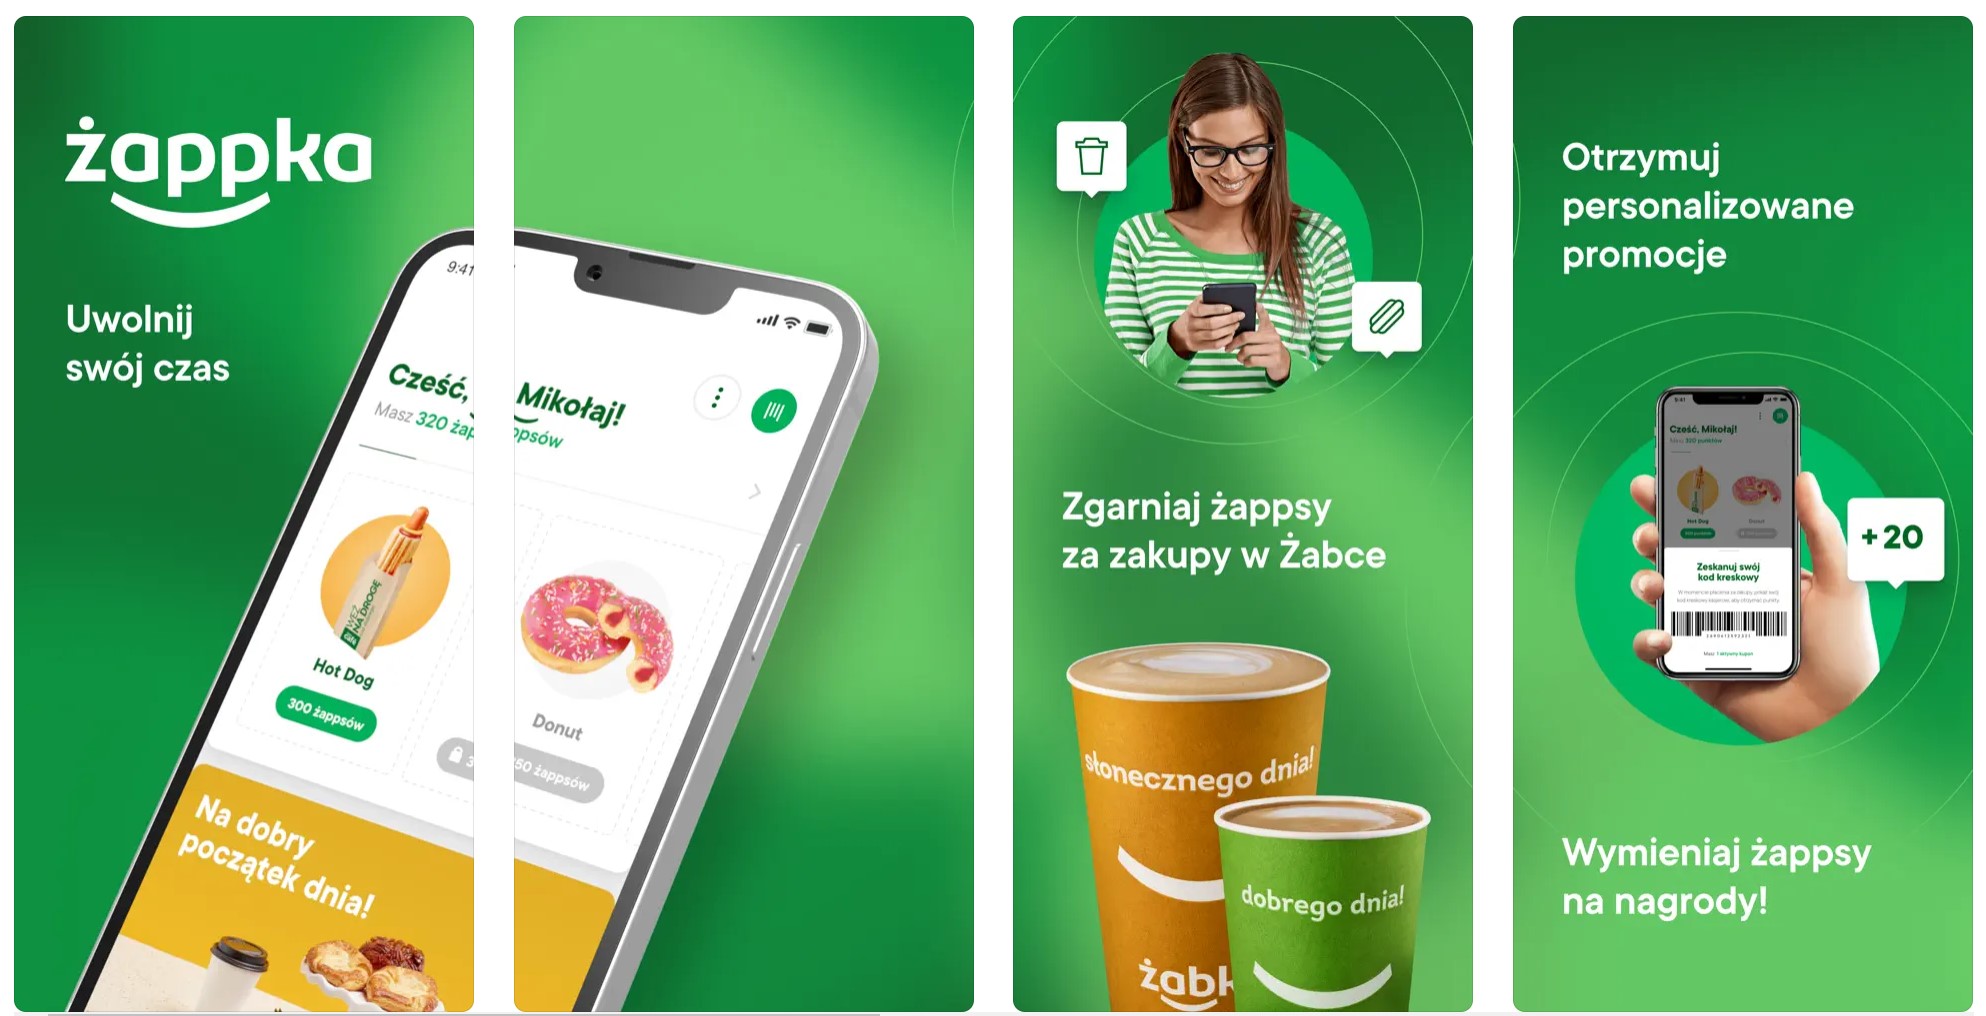 Zappka Zabka app